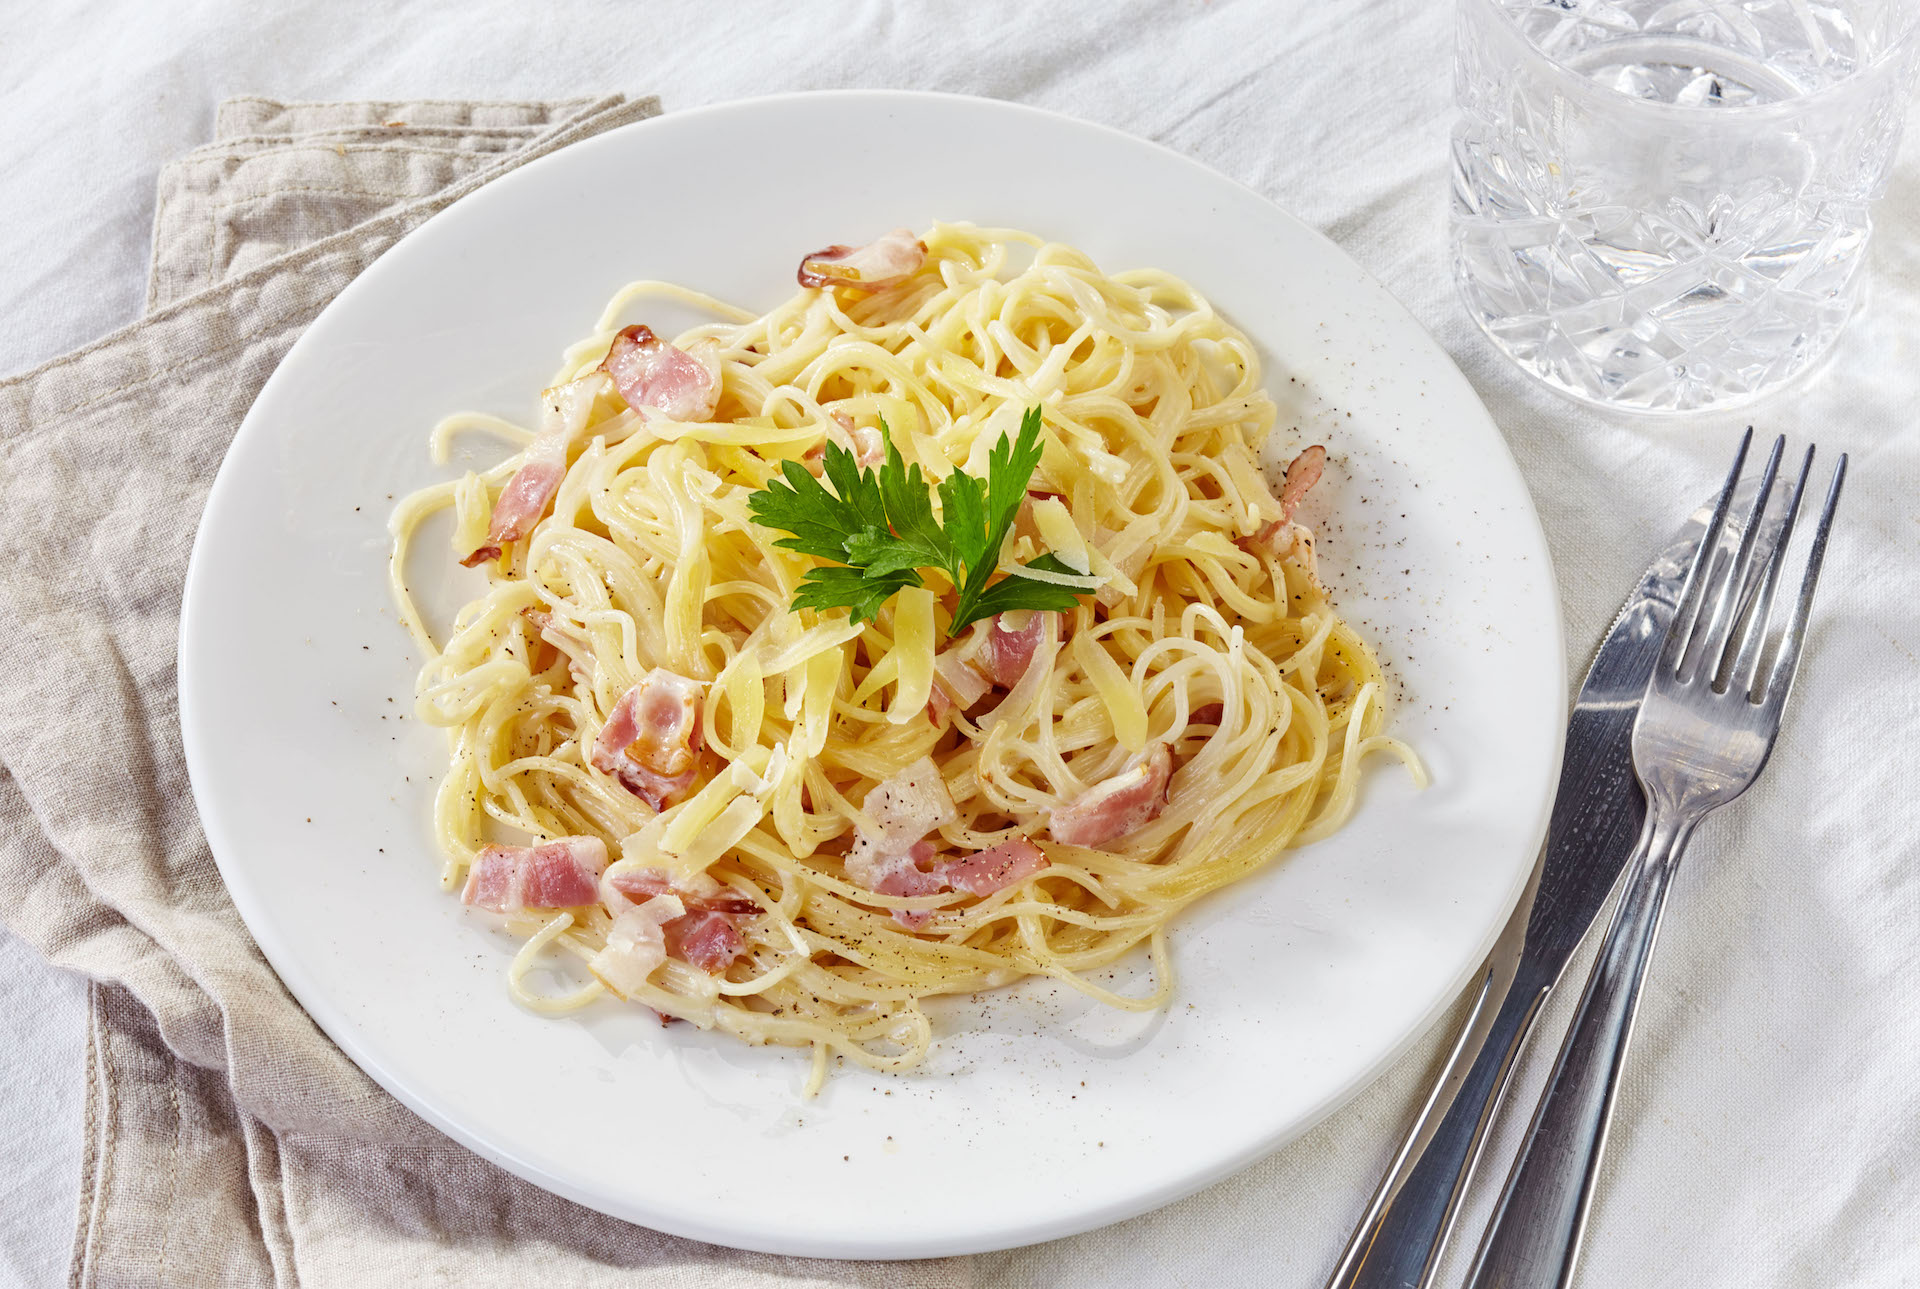 Espaguete à Carbonara pode ser servido como prato único, por reunir variados tipos de ingredientes / GB Imagem